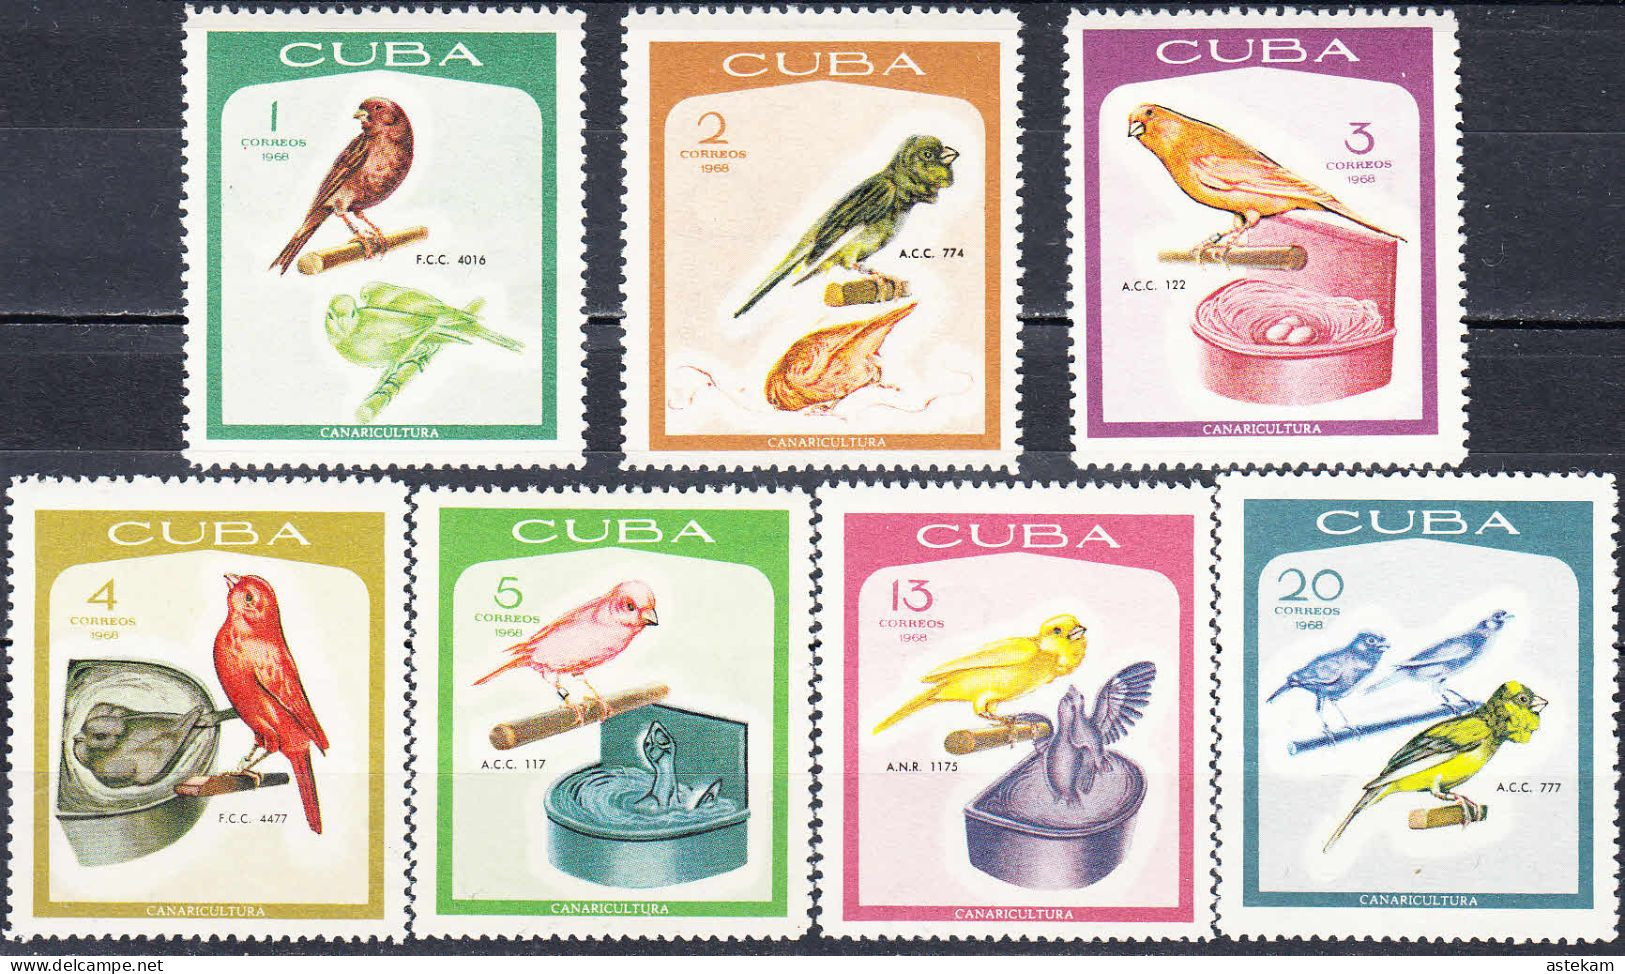 CUBA 1968, FAUNA, BIRDS, COMPLETE, MNH SERIES With GOOD QUALITY, *** - Ongebruikt